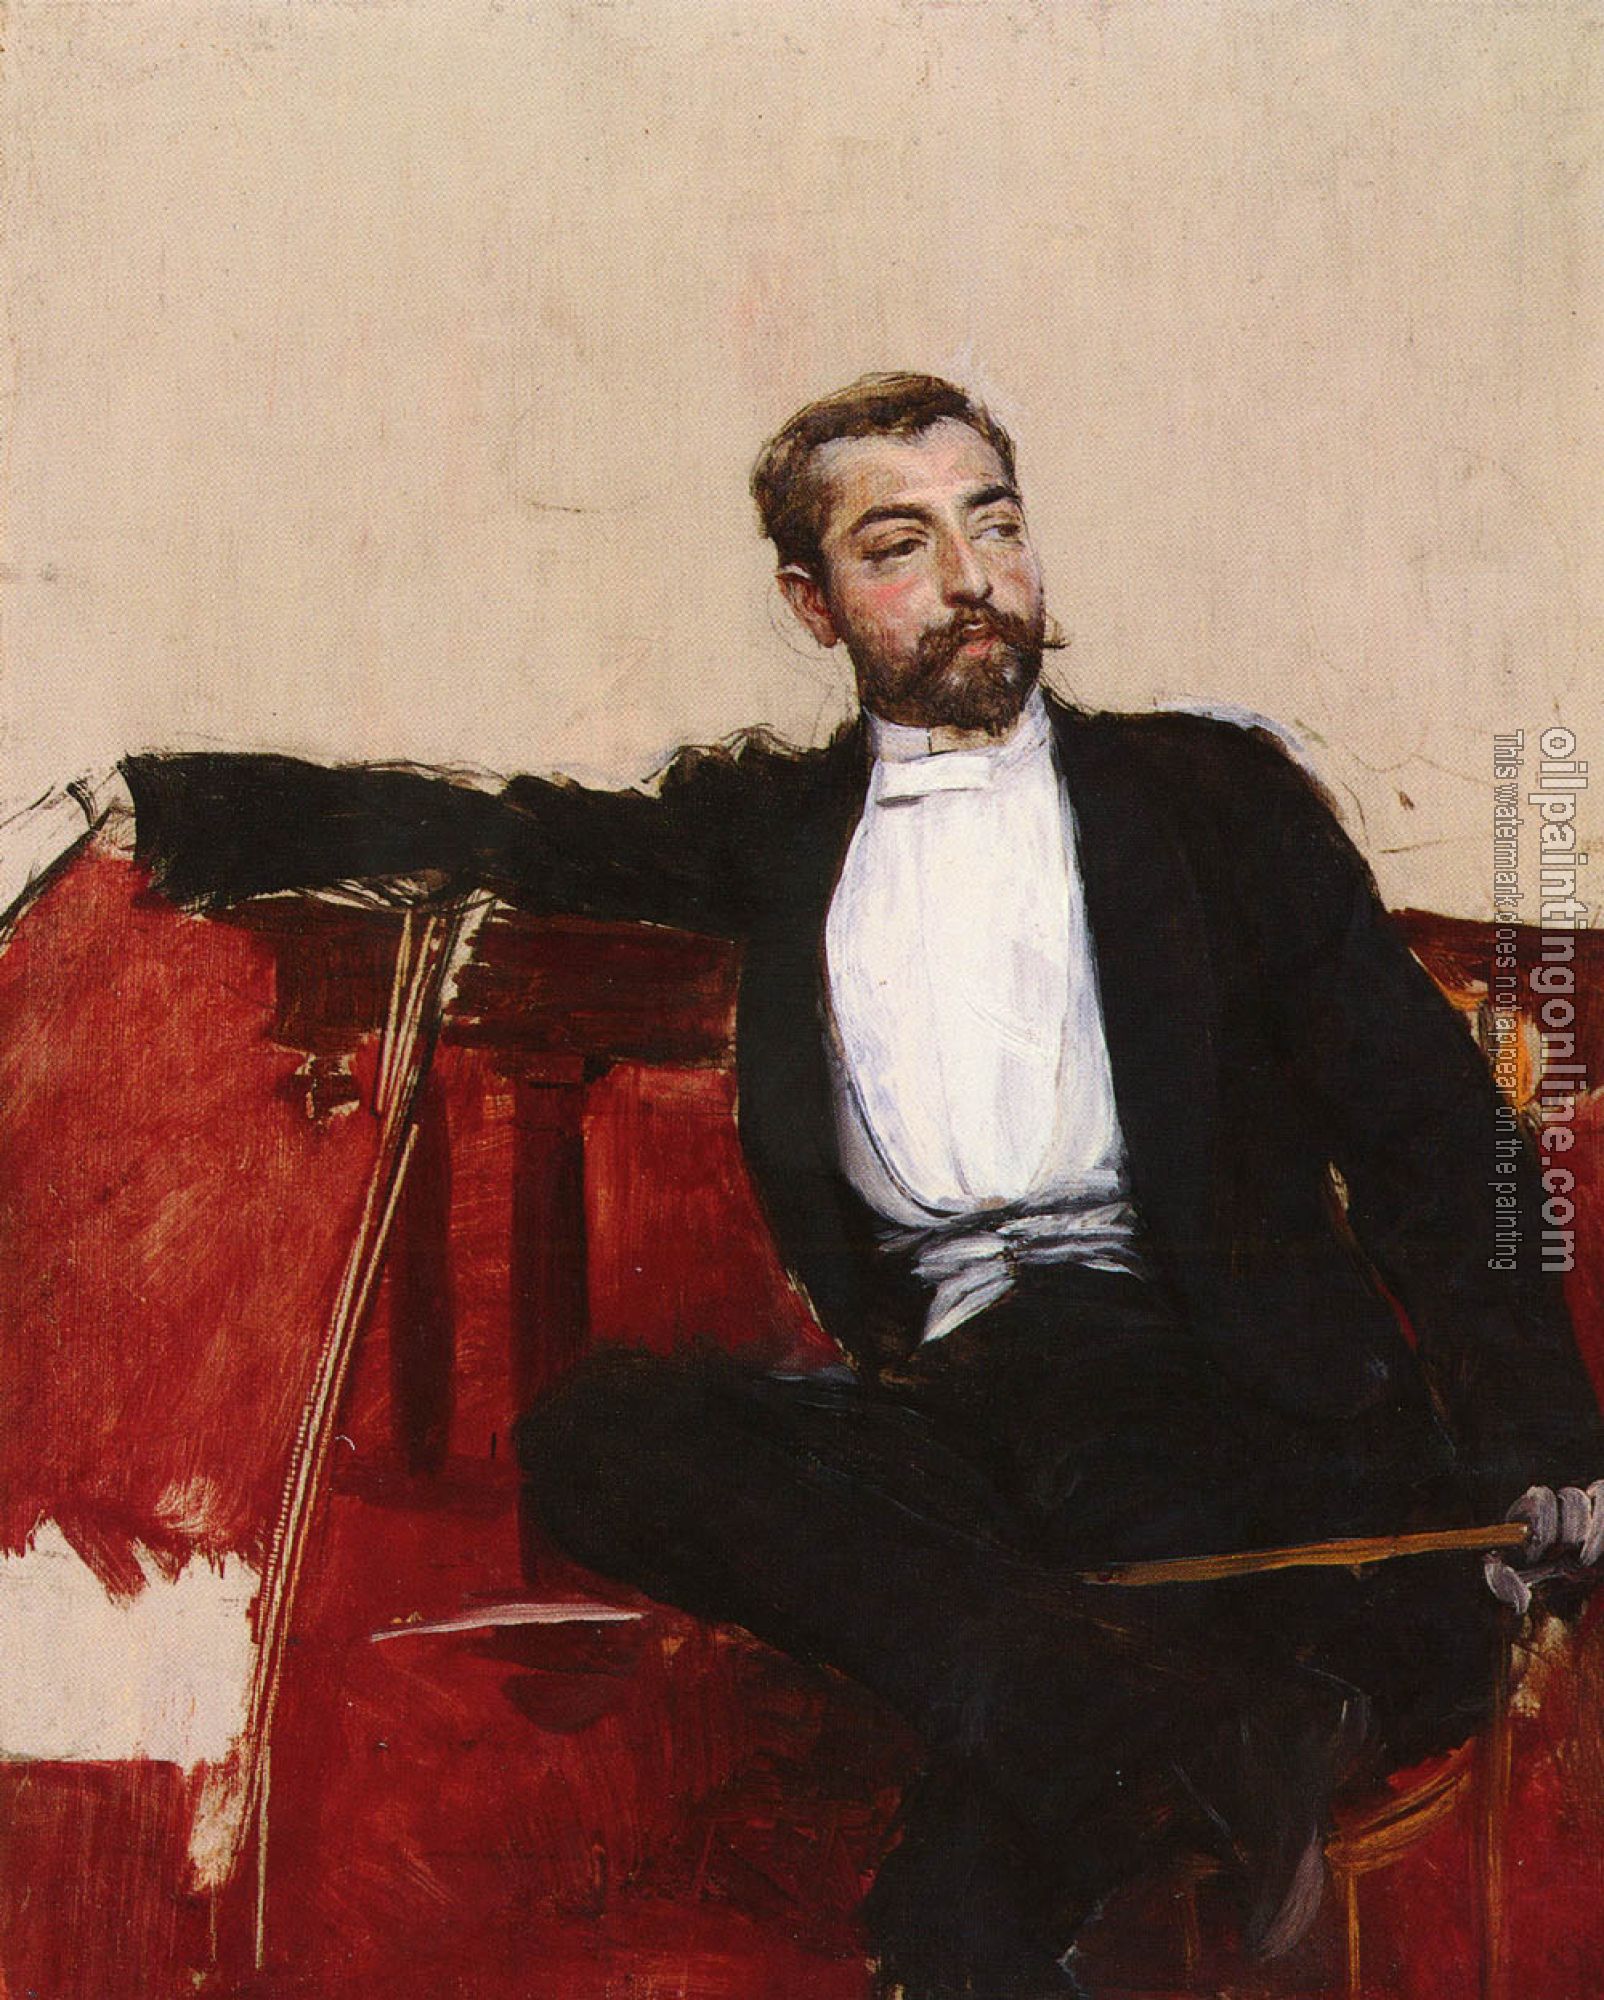 Giovanni Boldini - A Portrait of John Singer Sargent, L'uomo Dallo Sparato